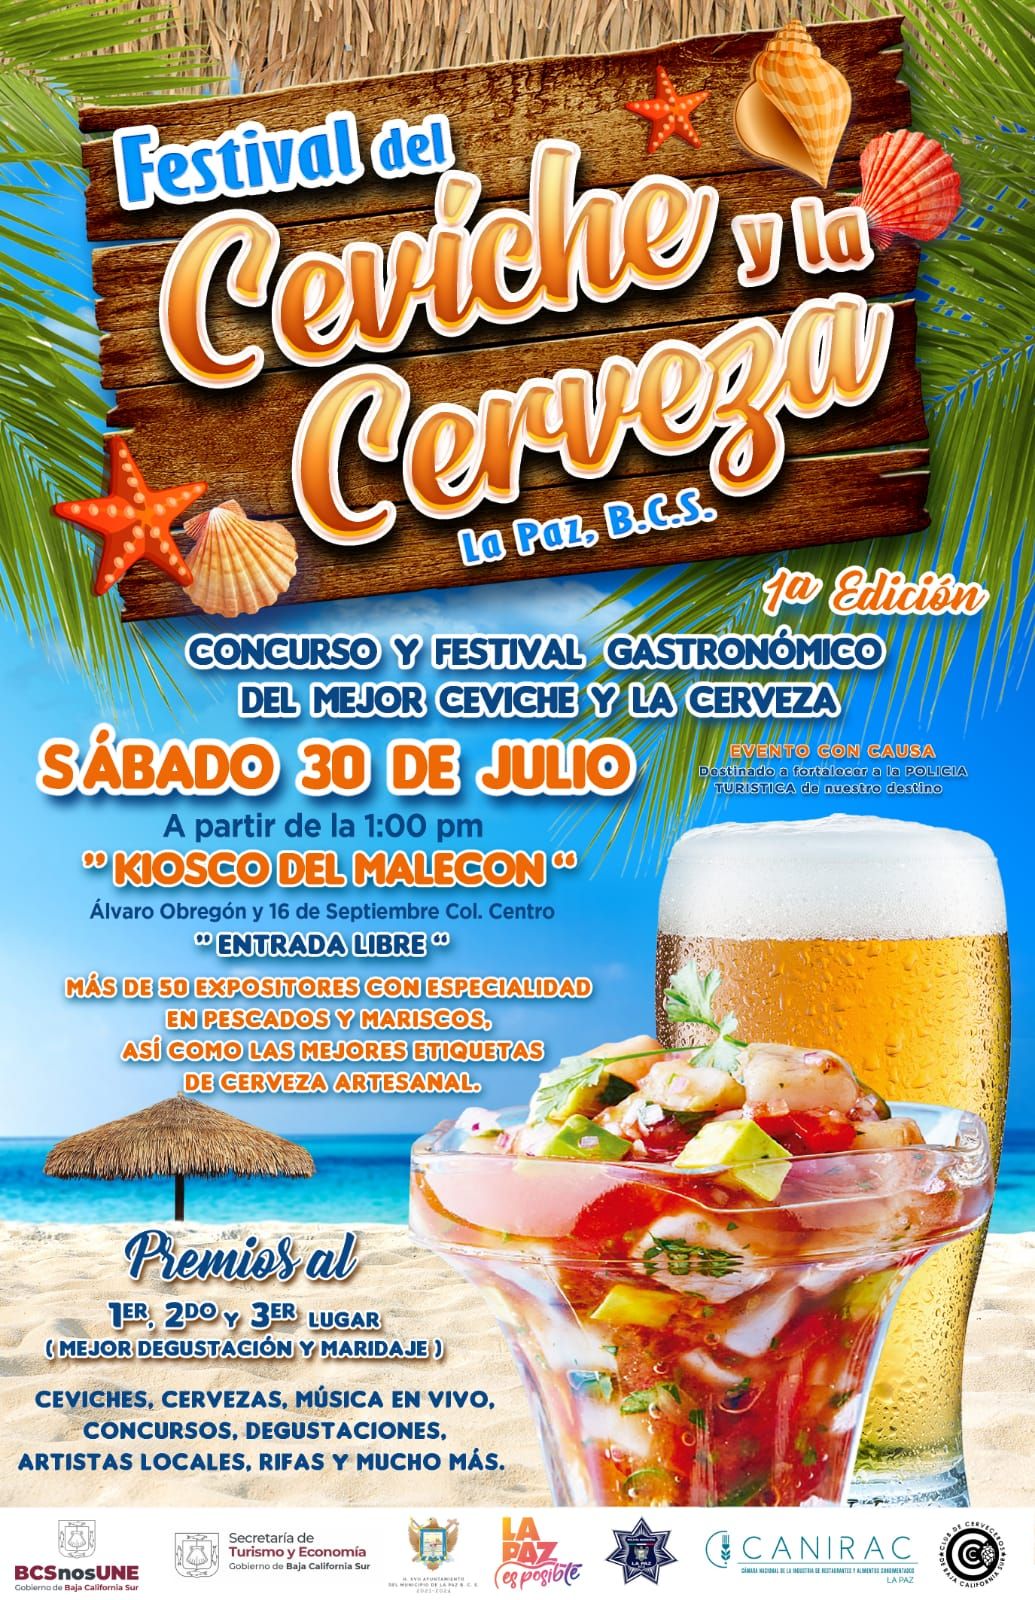 Todo listo para el “Primer Festival del Ceviche y la Cerveza” en el Malecón